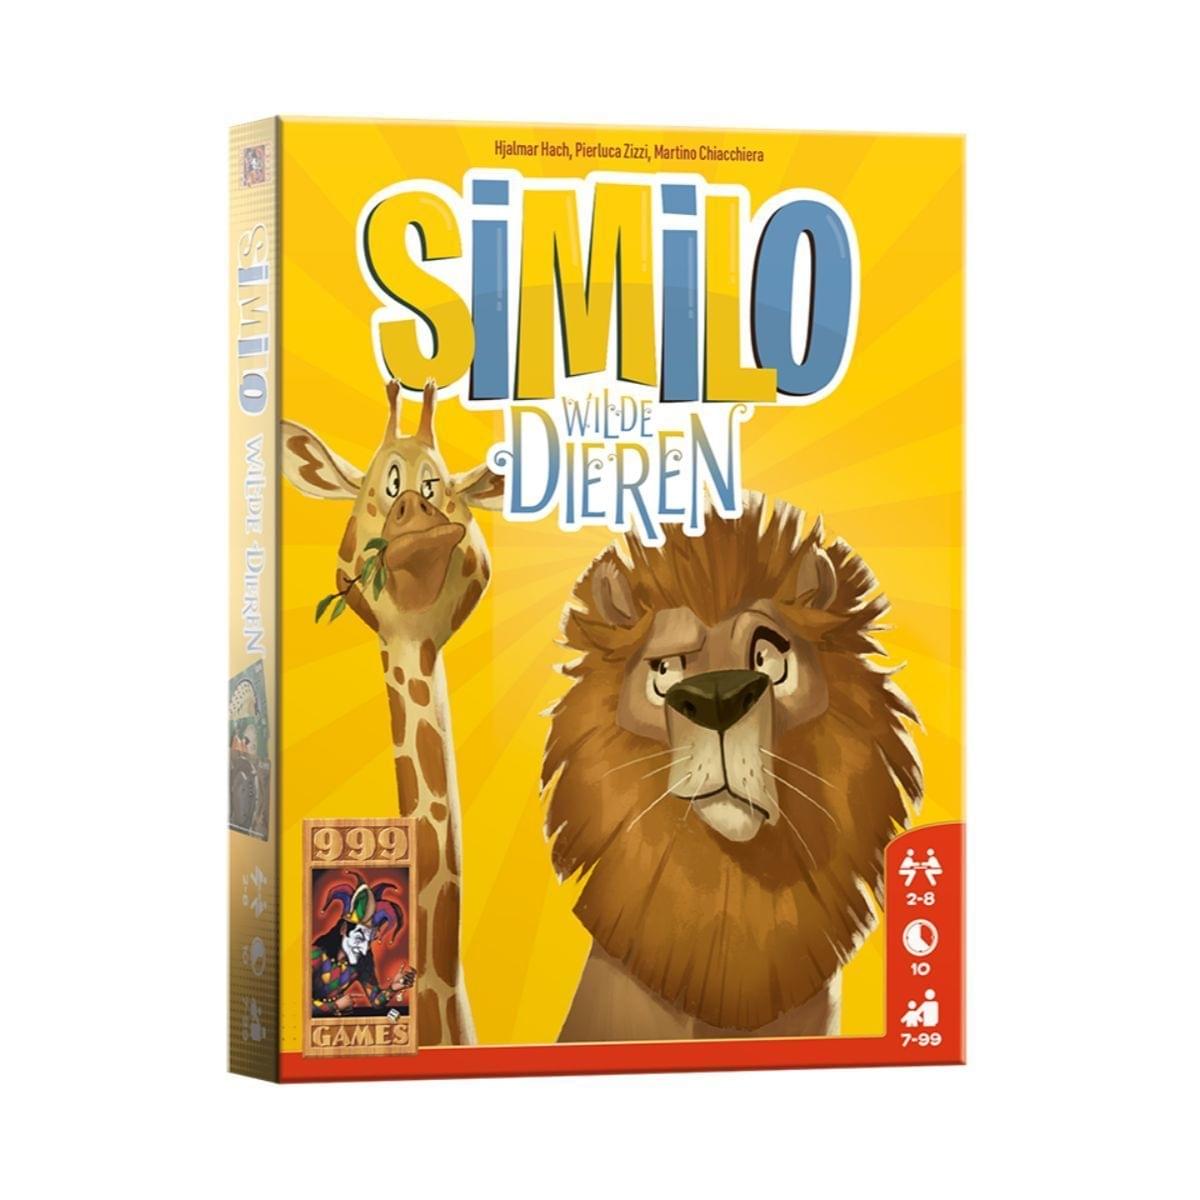 999 Games Sililo: Wilde Dieren